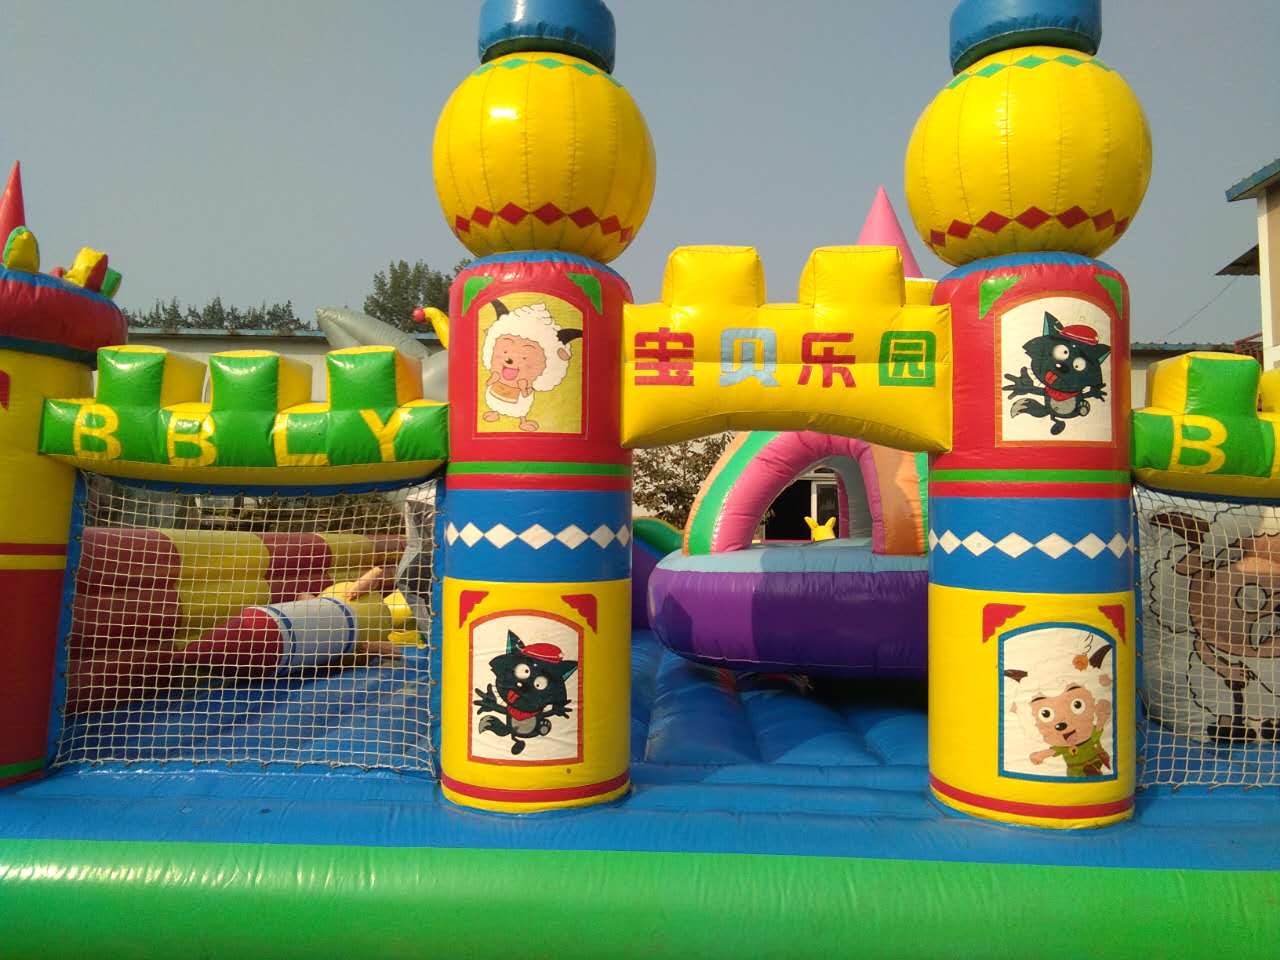 海洋球池出租涿州出租海洋球池北京厂家出租充气城堡设备出租